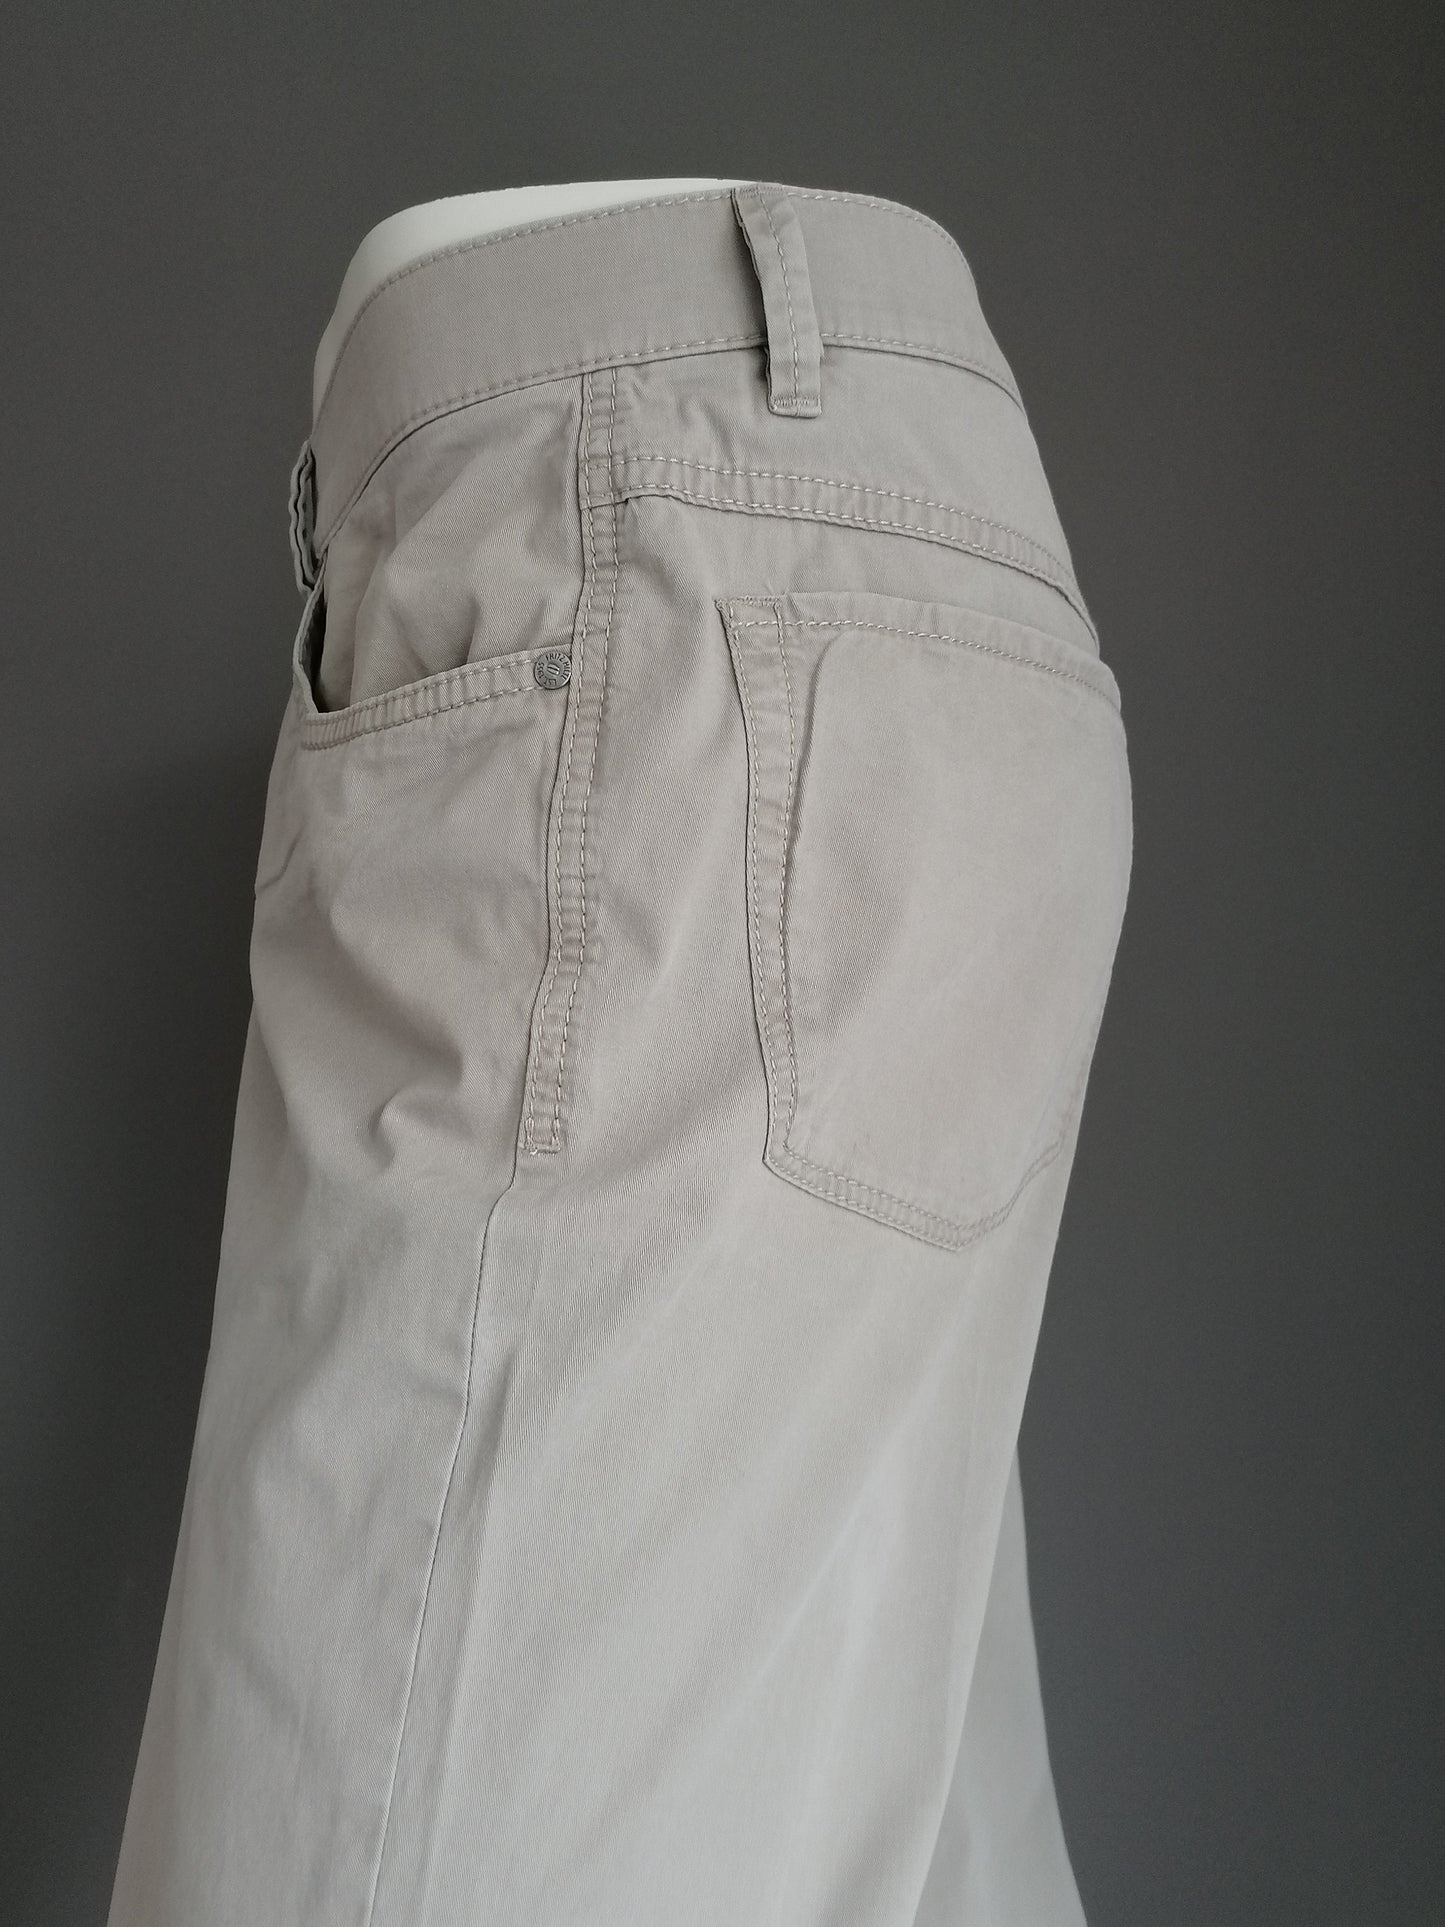 HILTL Pantalon. Beige colored. Type ZE500. Size 52 / L